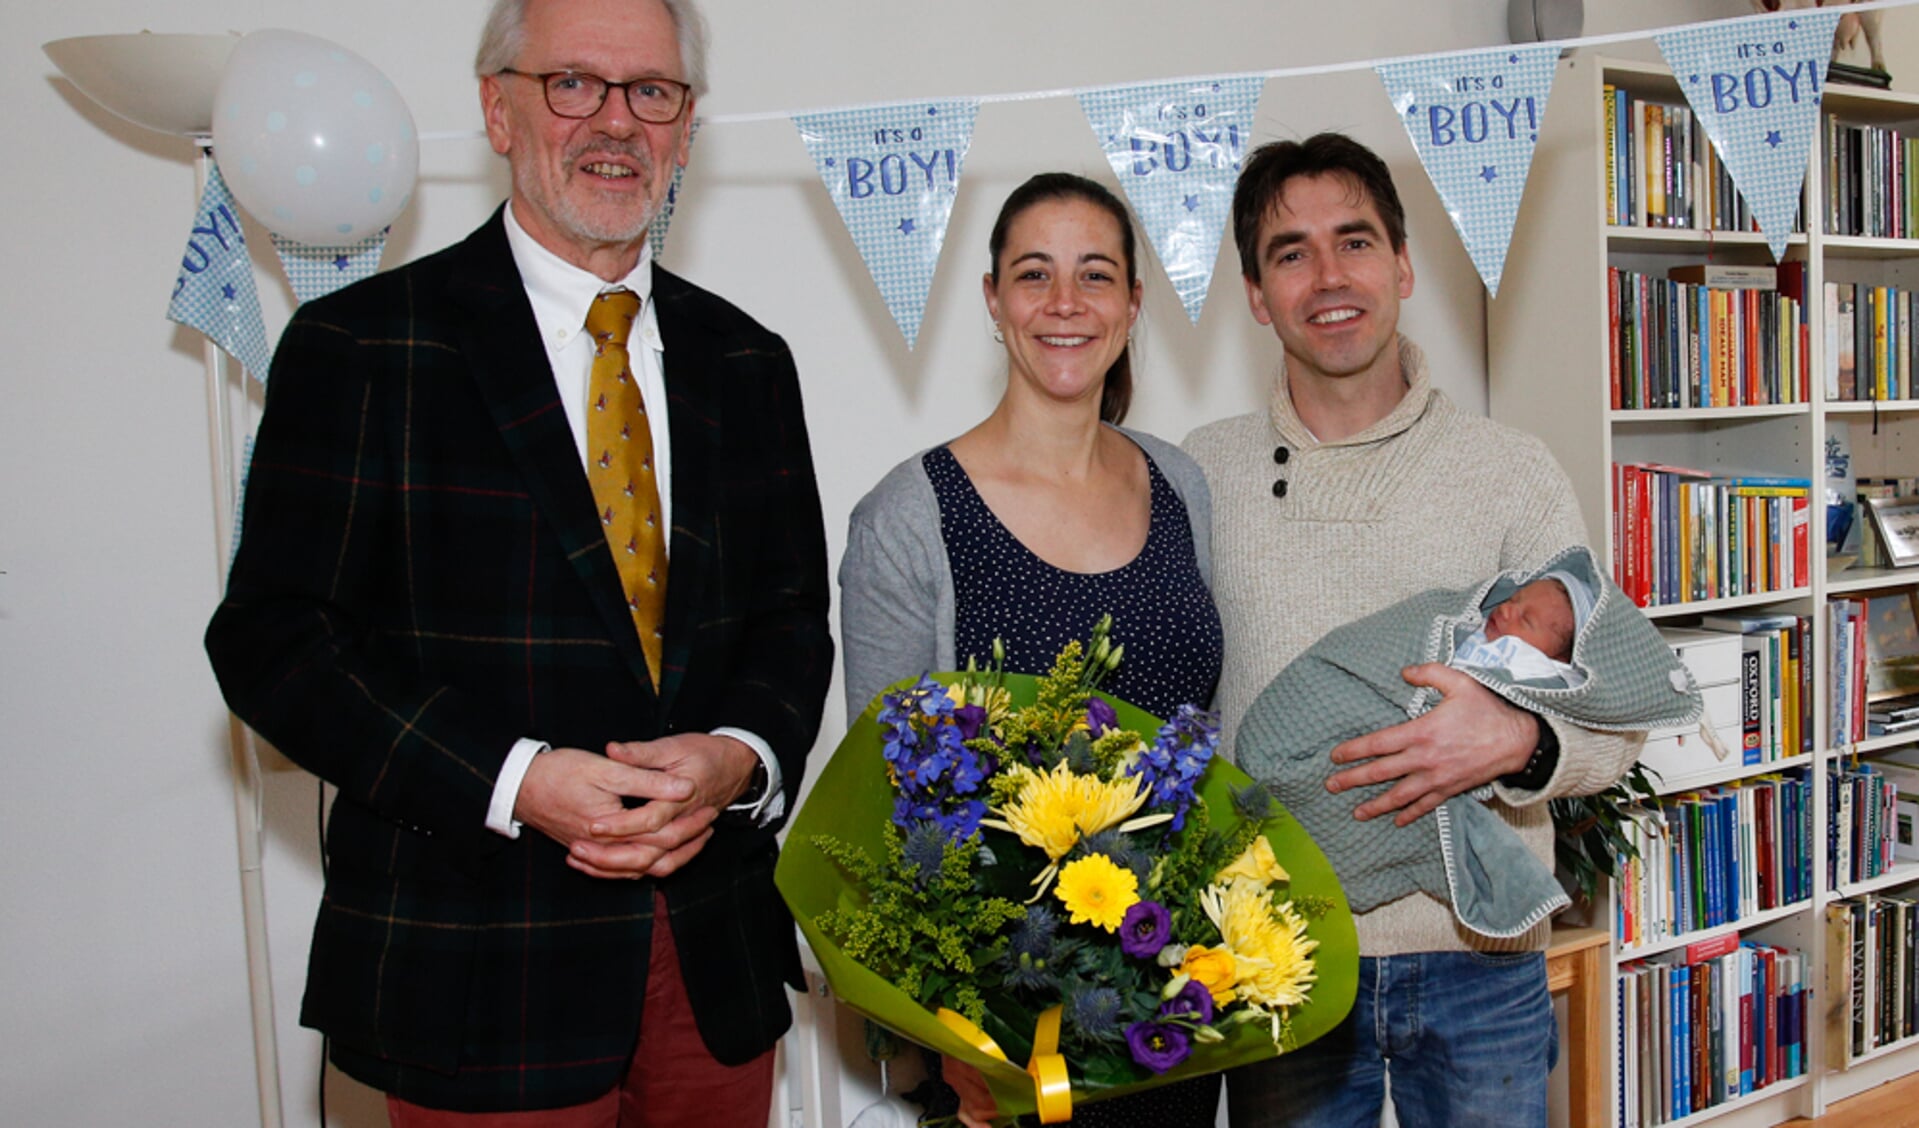 Burgemeester Hans Gaillard samen met de trotse ouders Roos en Bram en baby Pim op de foto 